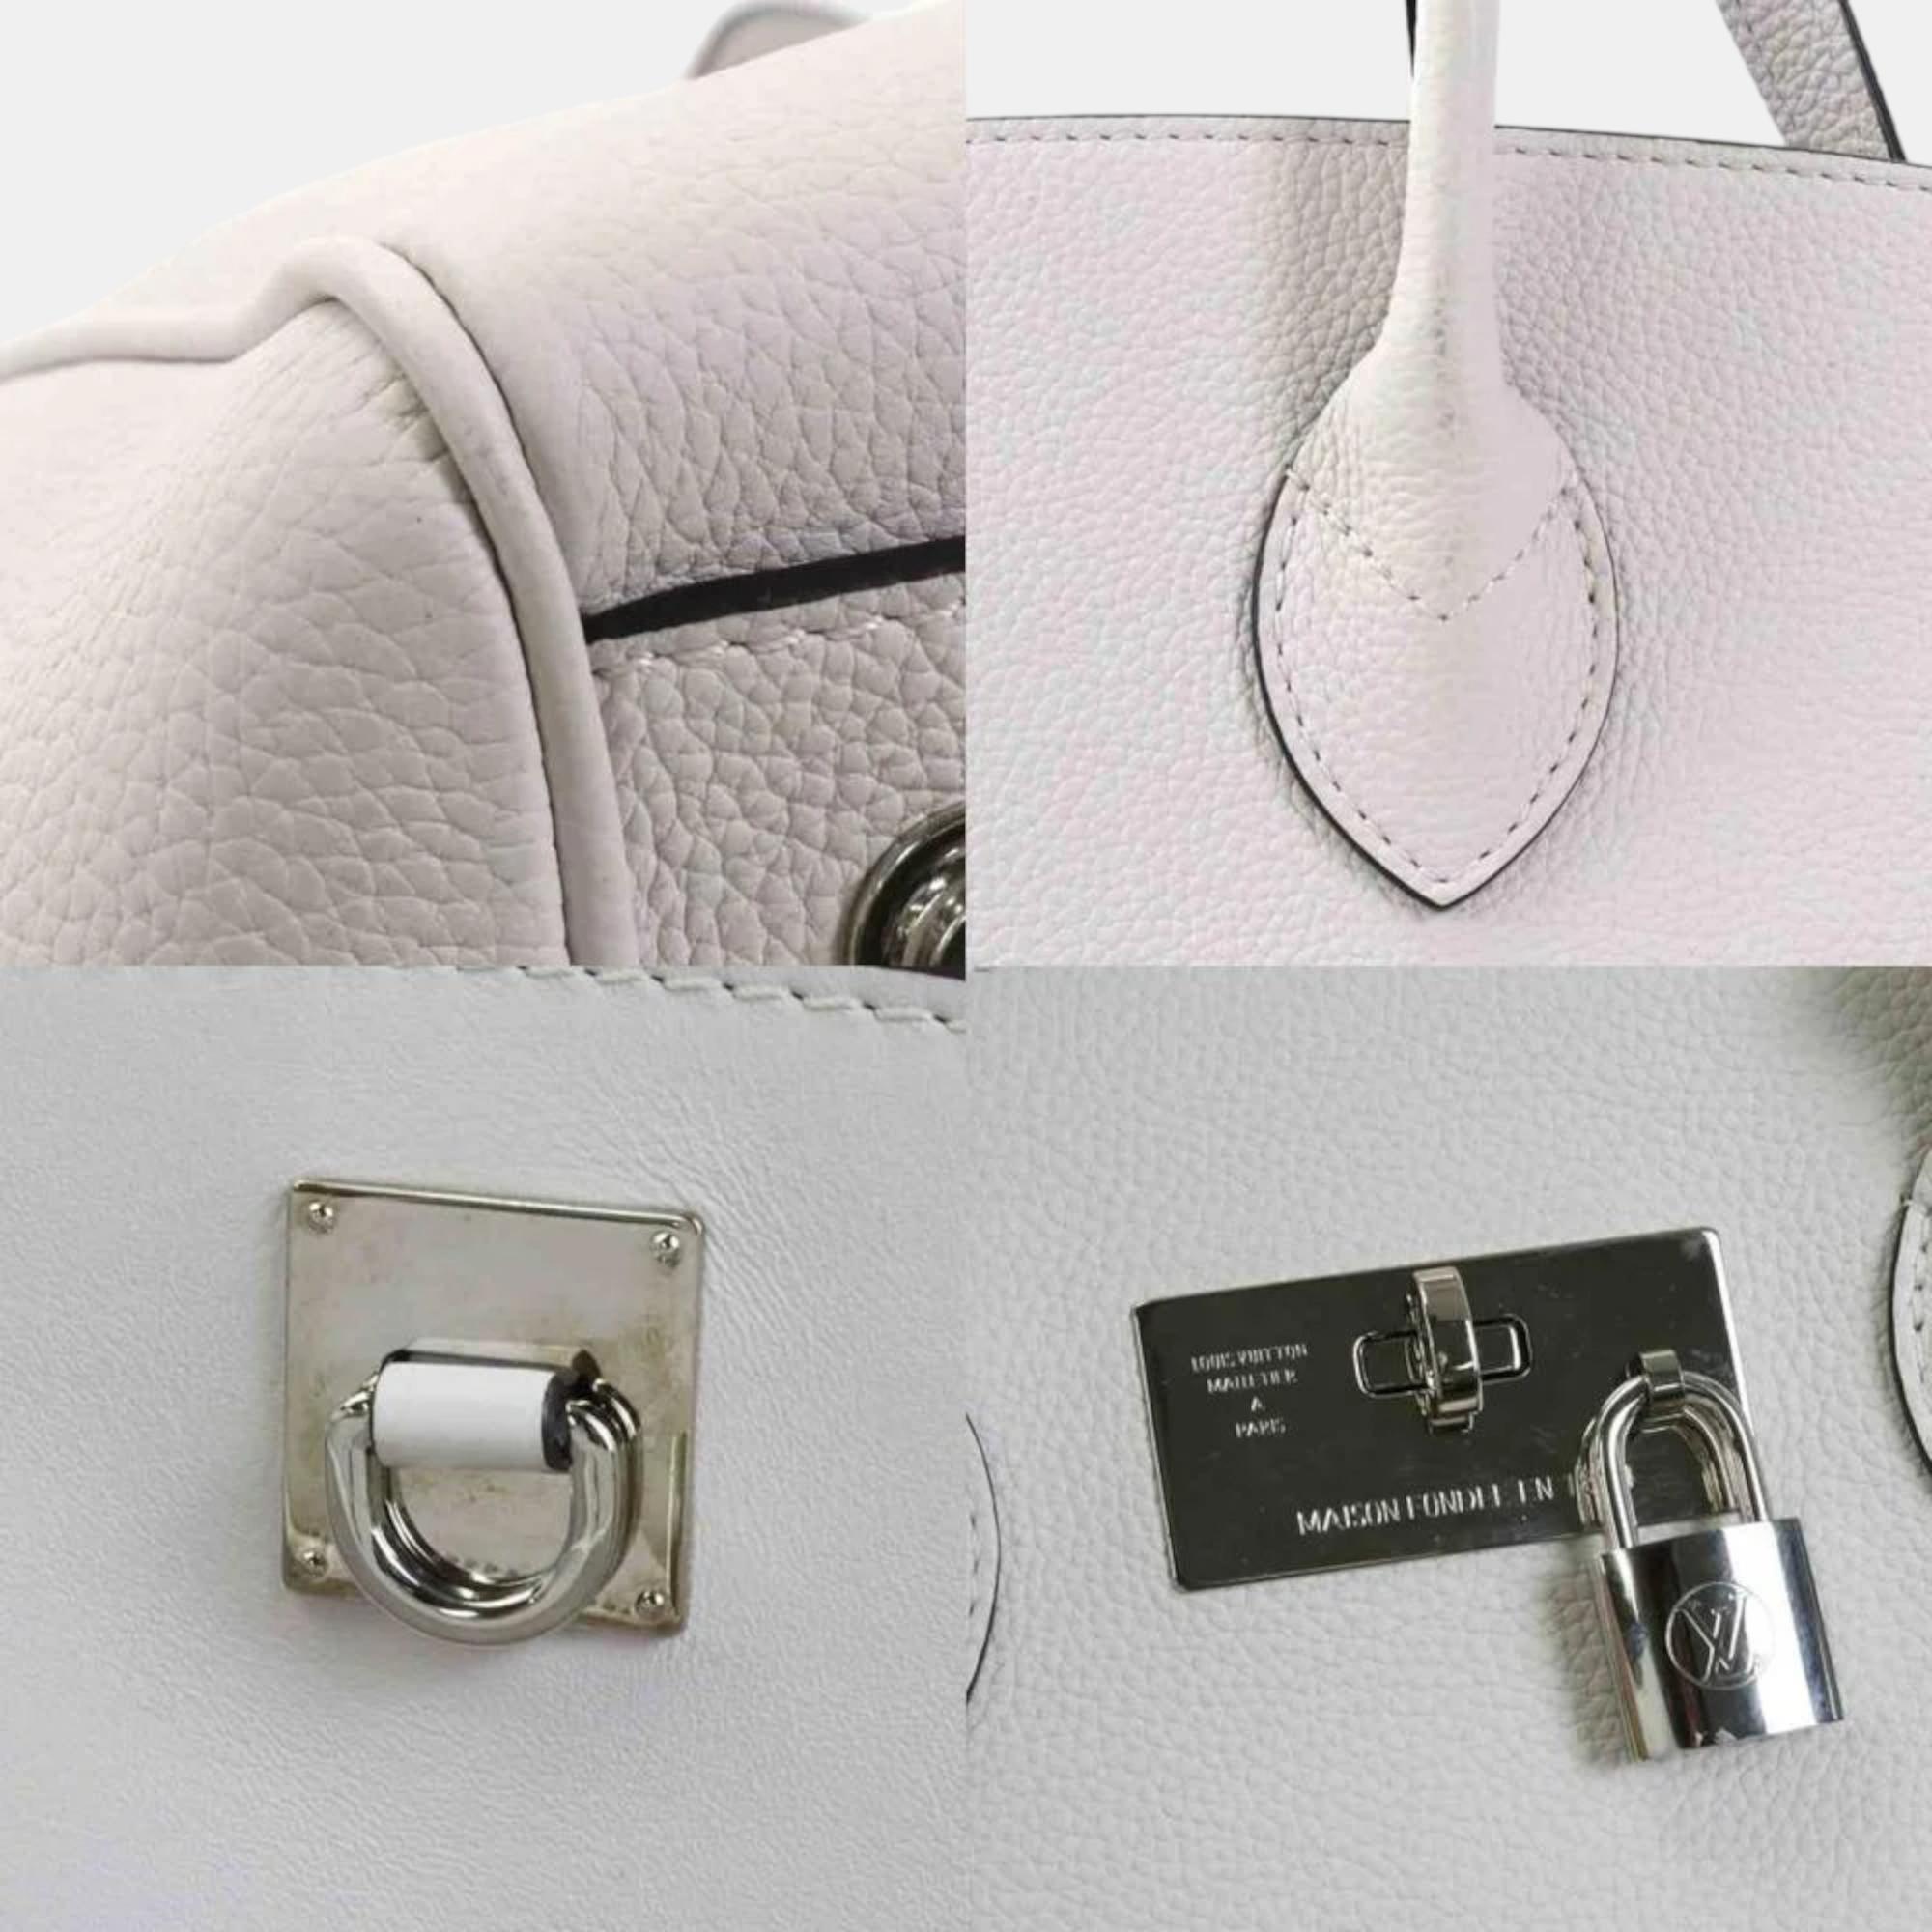 Louis Vuitton Silver Leather Milla MM Satchel Bag